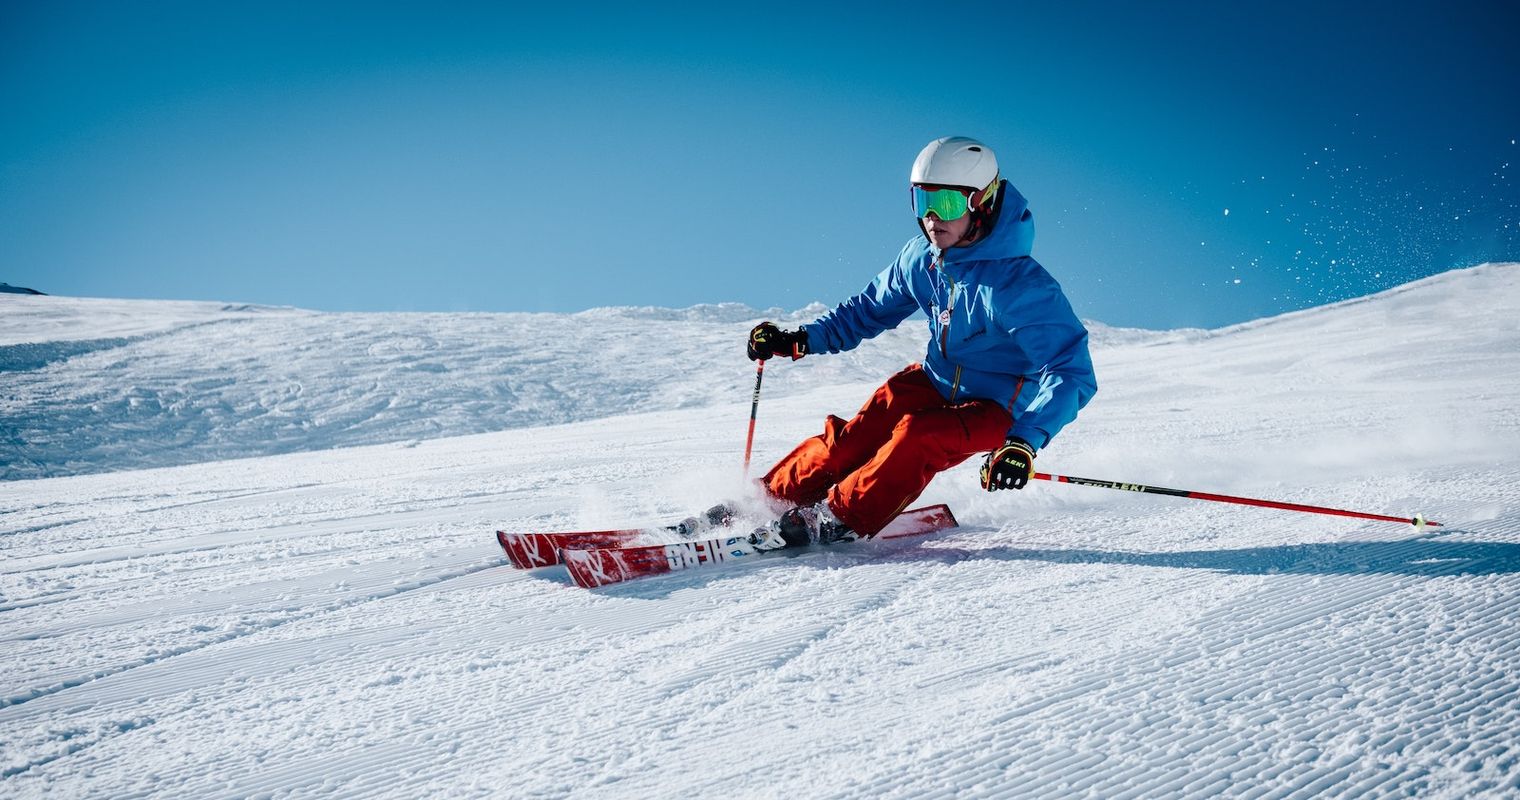 Zentralschweizer Skigebiete erhöhen Preise